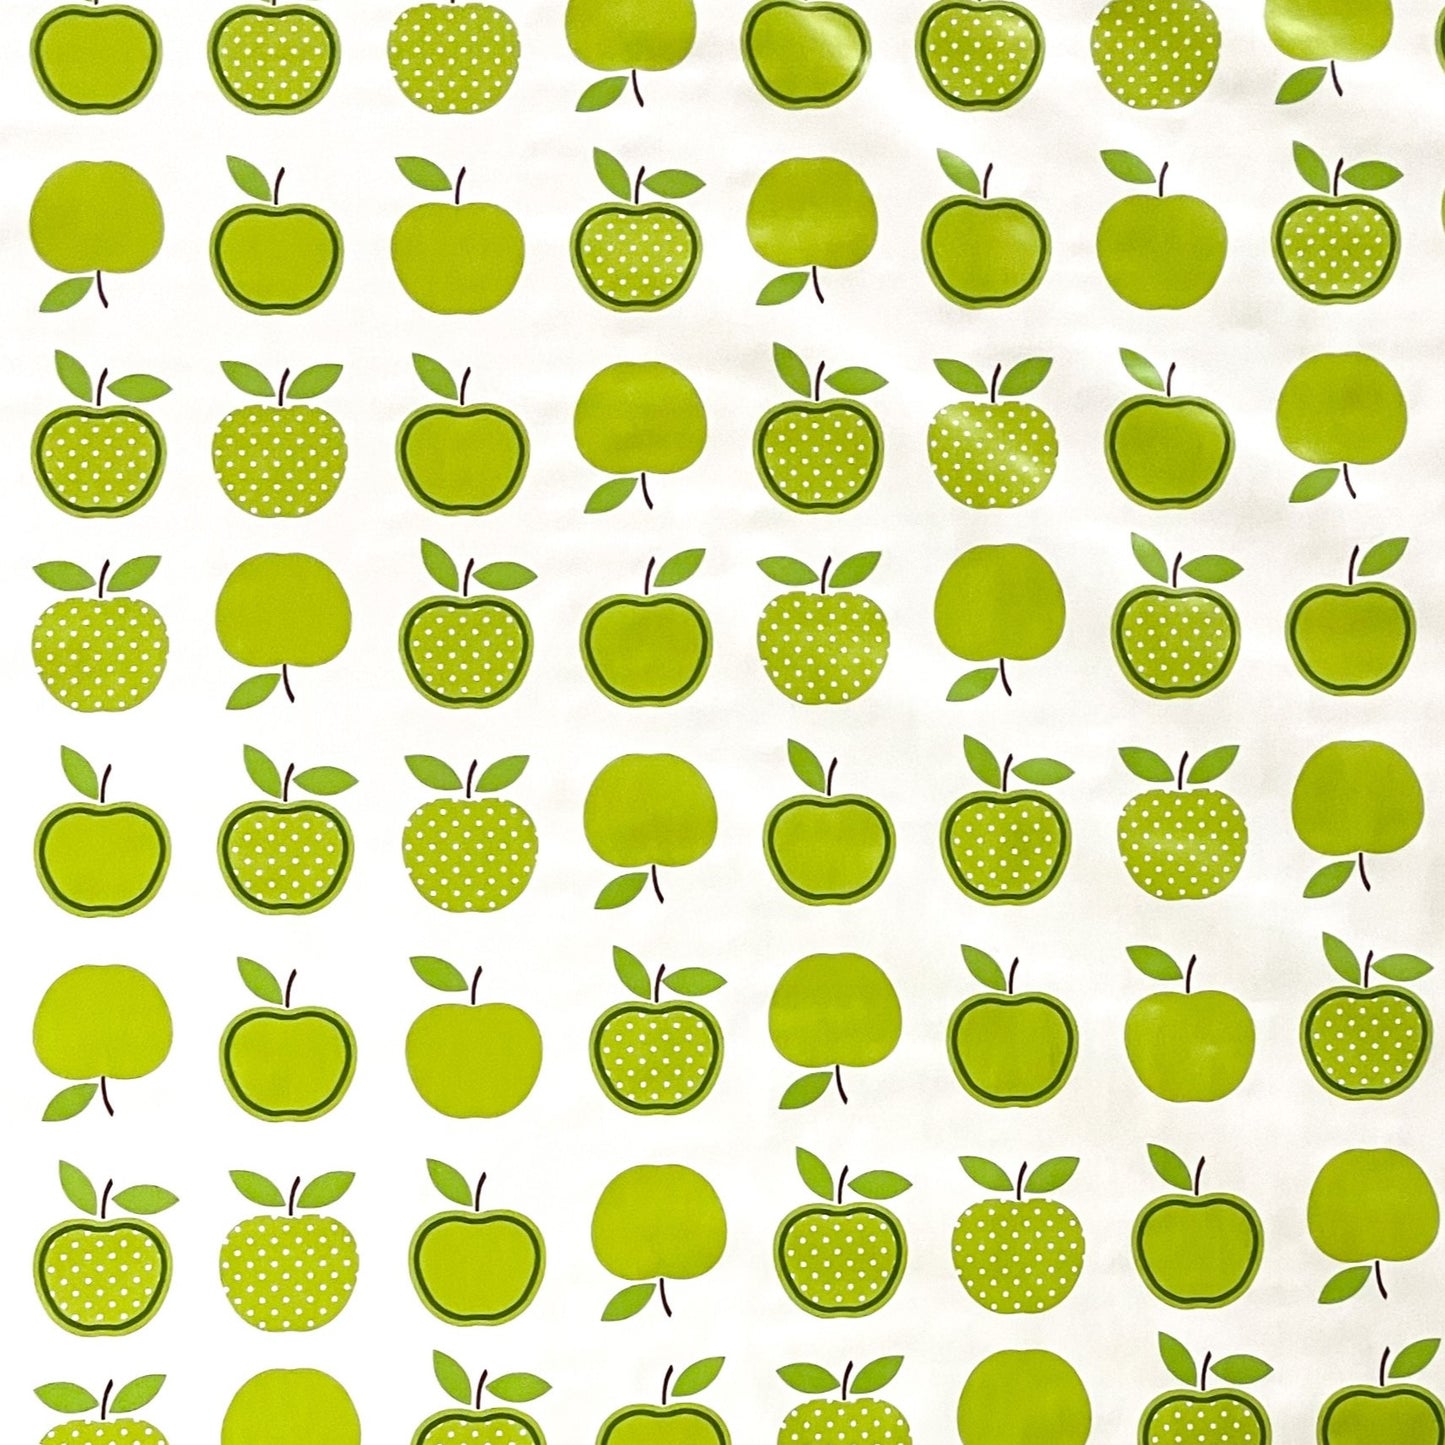 KEVKUS Wachstuch Tischdecke 06023-01 grüne Äpfel Obst wählbar in eckig, rund und oval -